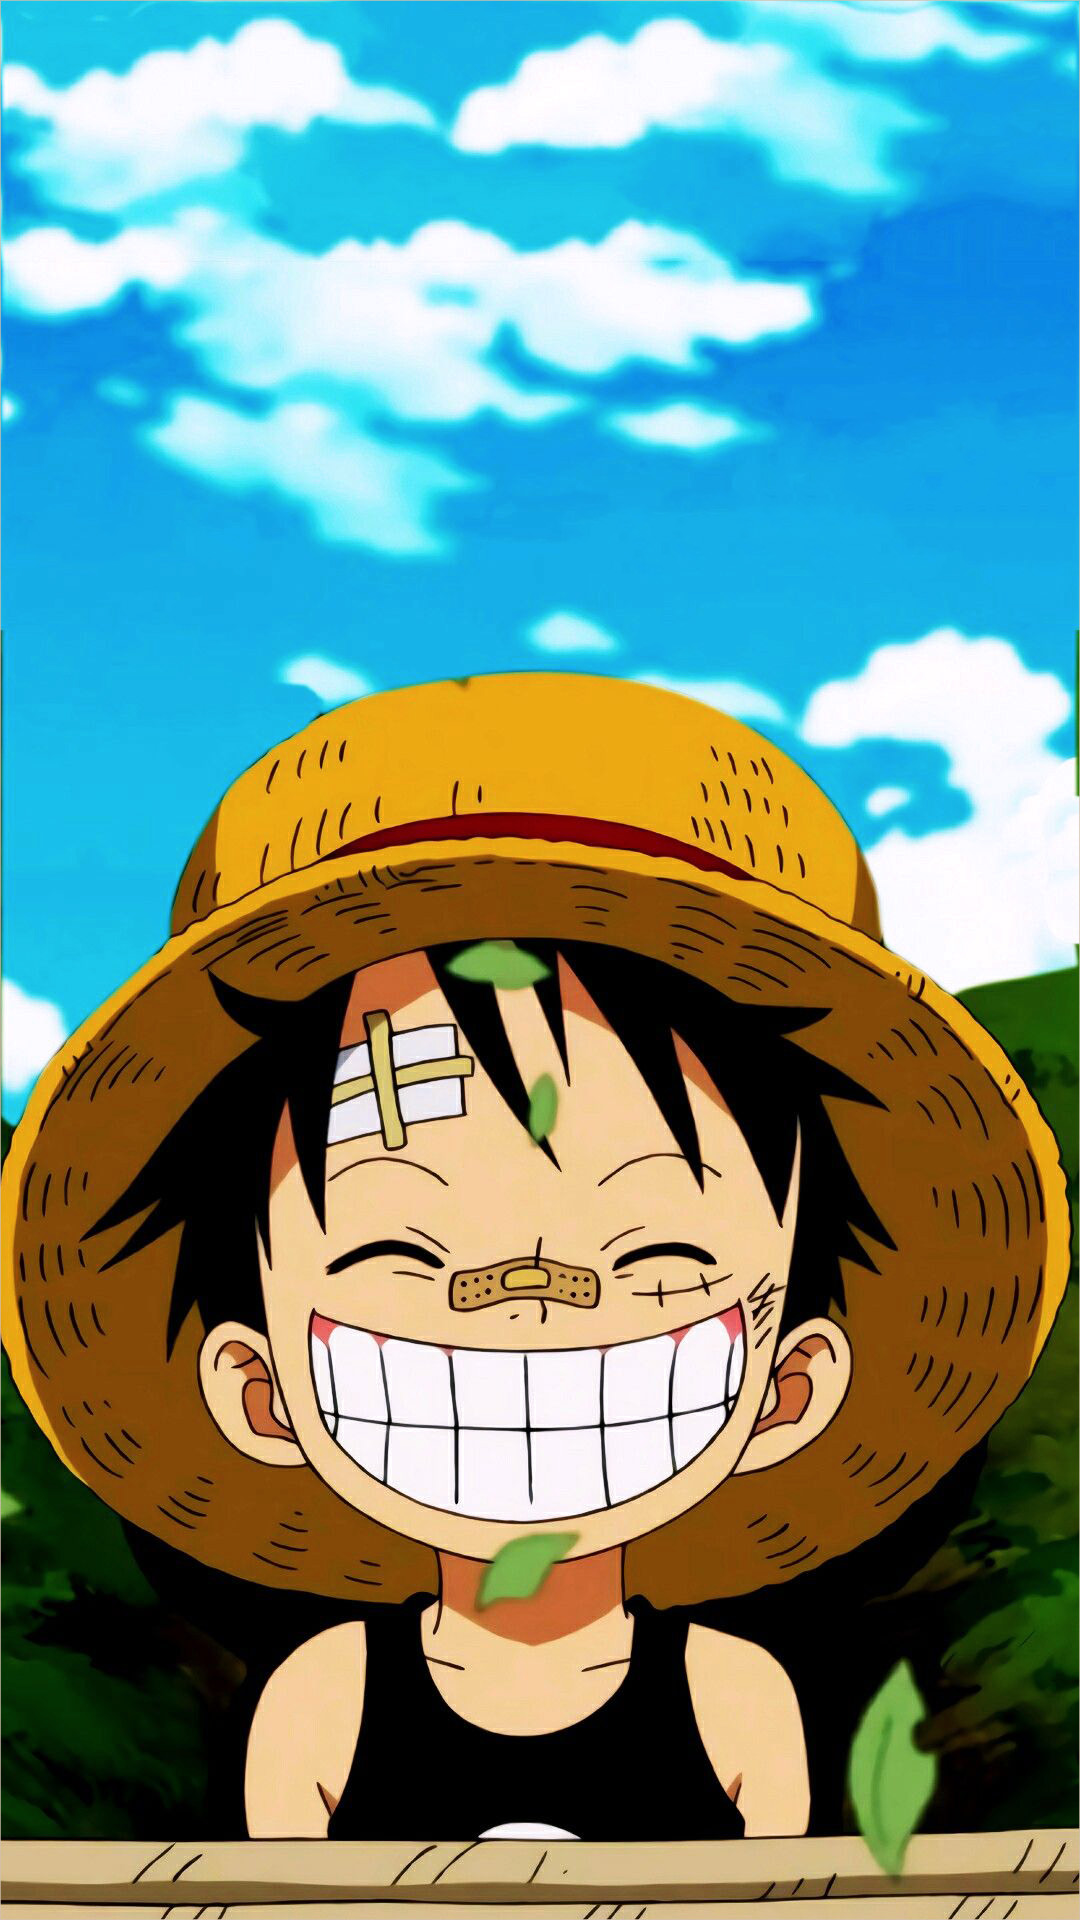 Luffy - ảnh Luffy: Bạn là Fan của bộ truyện tranh One Piece? Bạn yêu thích nhân vật Luffy? Hãy cùng chúng tôi đến với thế giới One Piece, tìm hiểu về Luffy và những đồng đội Pirate của anh ta. Hình ảnh Luffy đầy mạnh mẽ và hấp dẫn sẽ đưa bạn vào một cuộc hành trình đầy kịch tính, không thể bỏ qua. Nhấn vào hình ảnh liên quan để thưởng thức những hình ảnh đẹp nhất về Luffy.